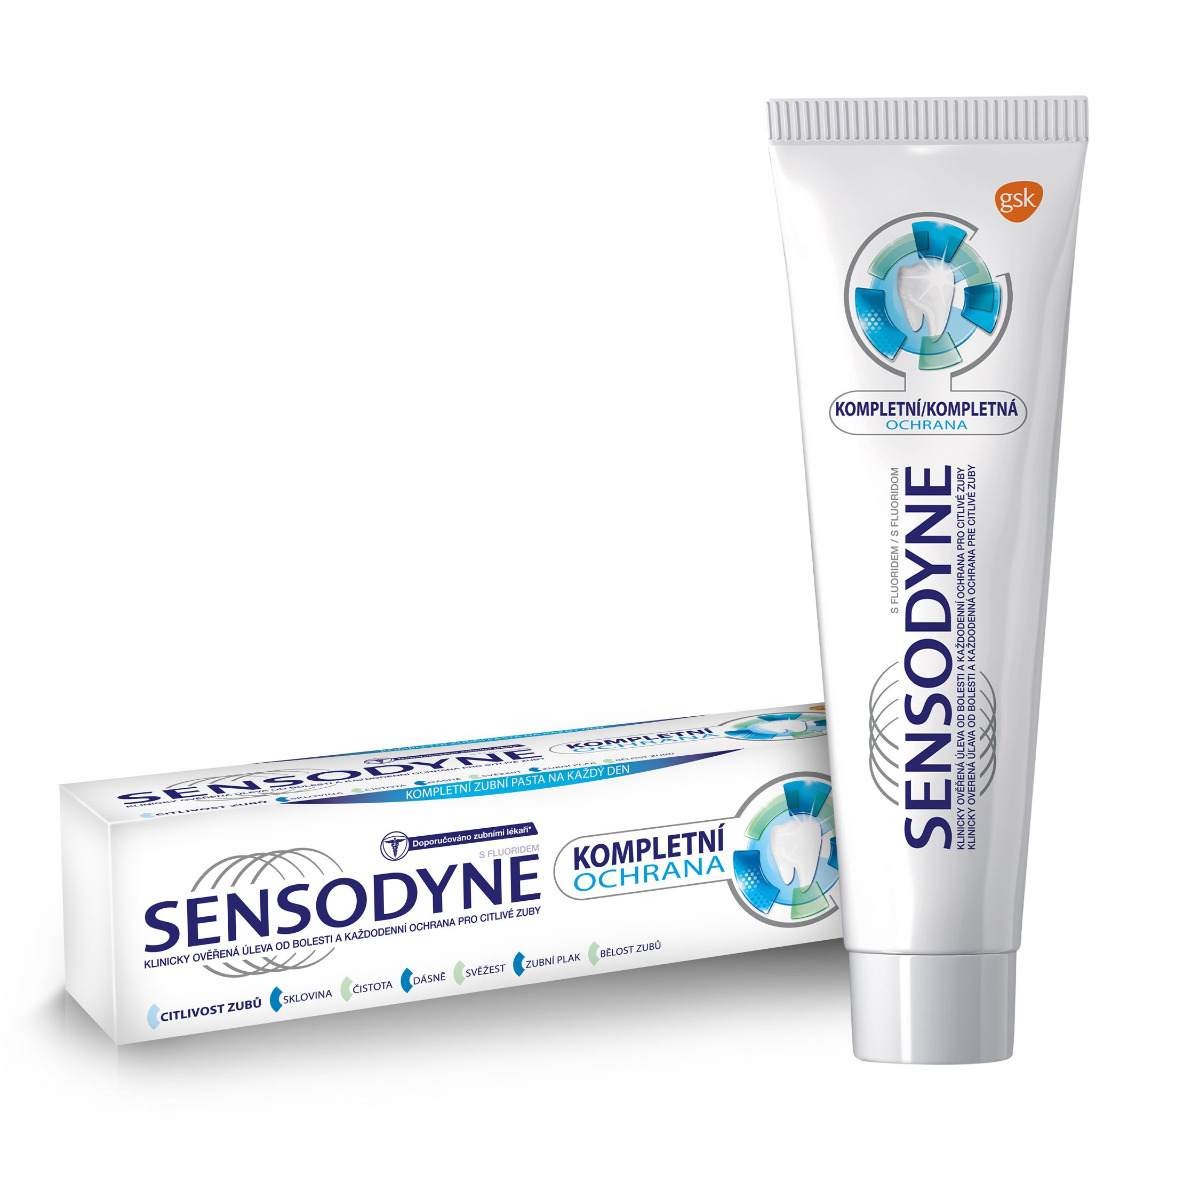 Sensodyne Kompletní ochrana zubní pasta 75 ml Sensodyne